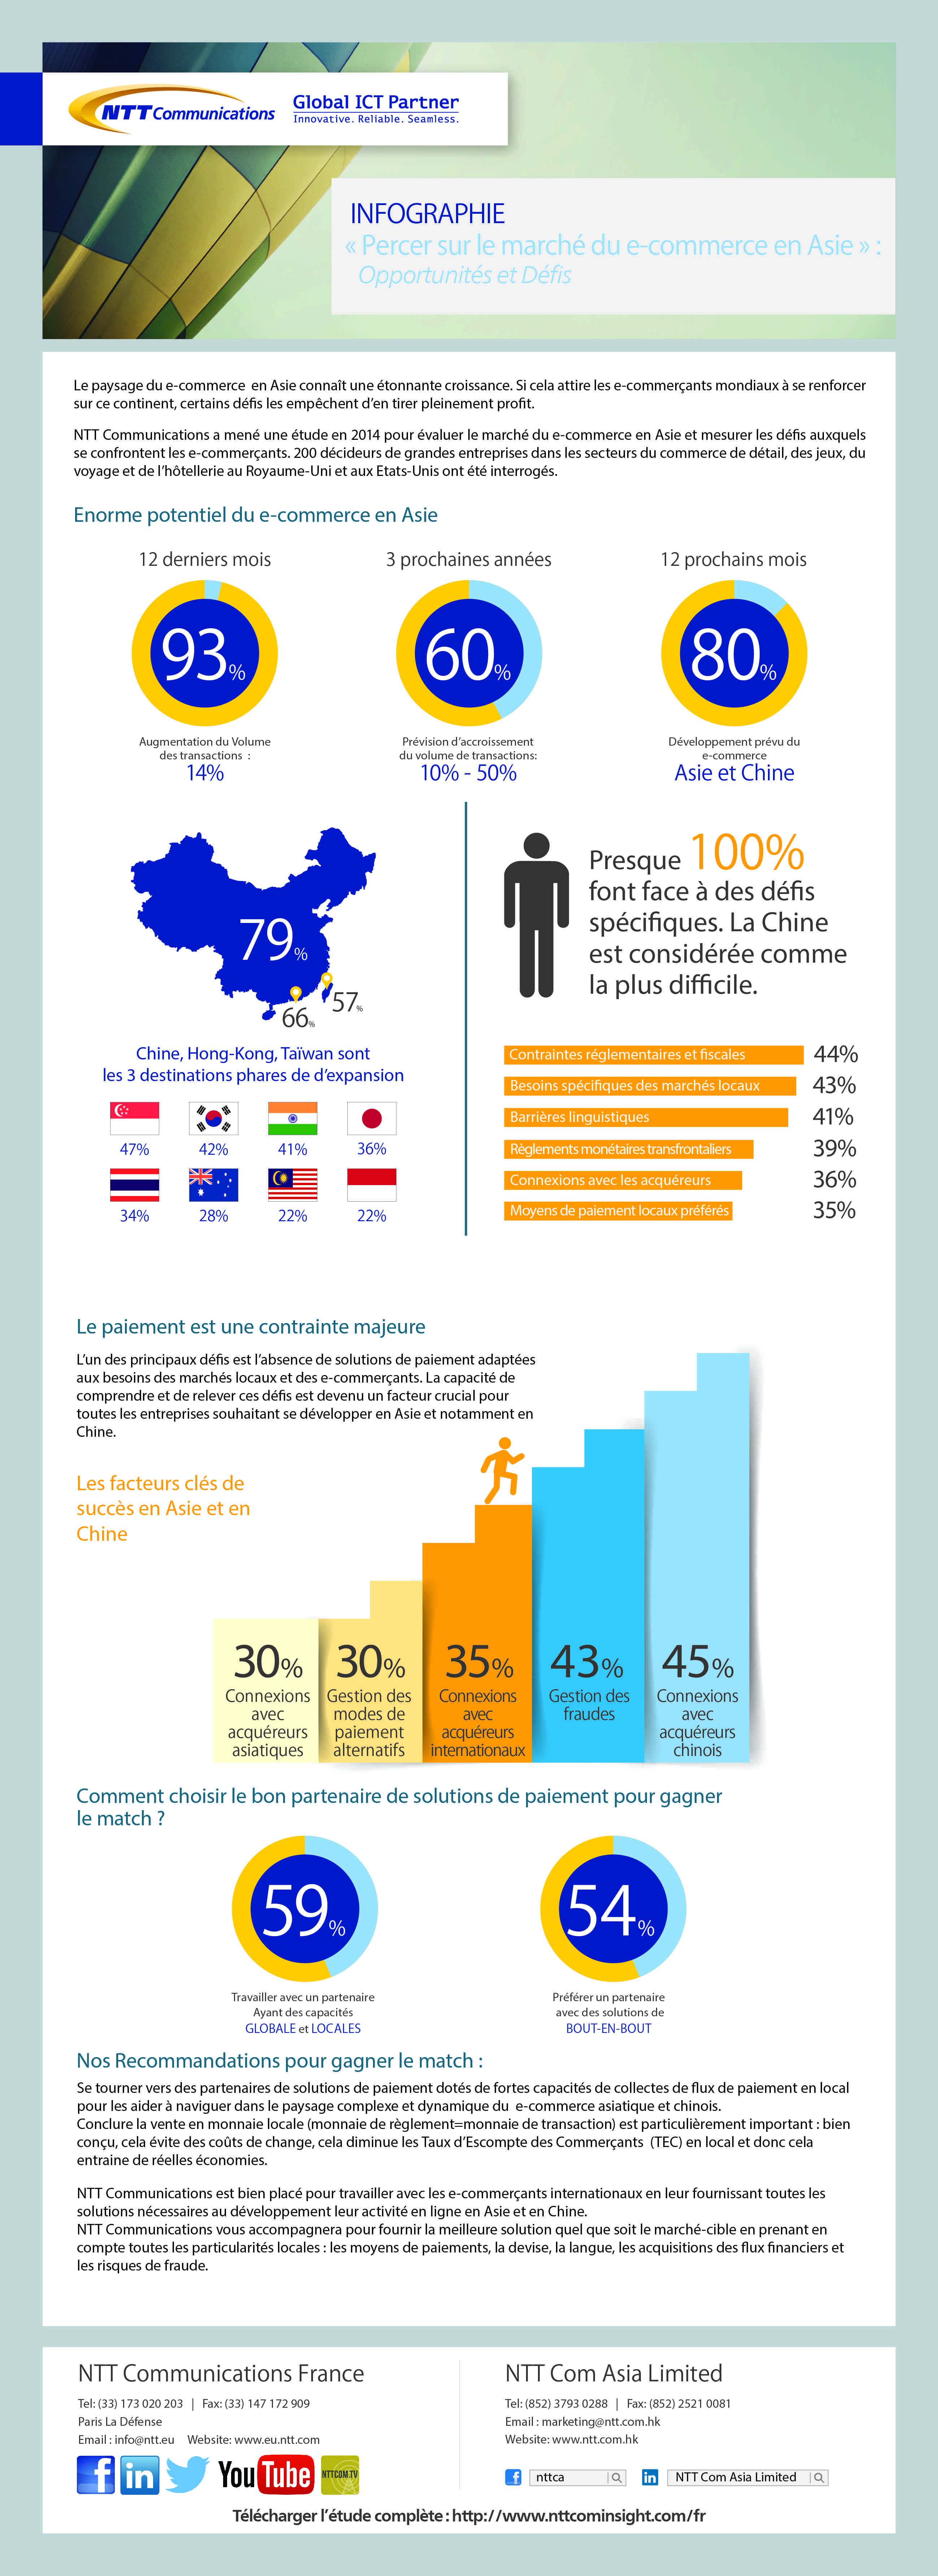 Infographie NTT : Percer sur le marché du e-commerce en Asie